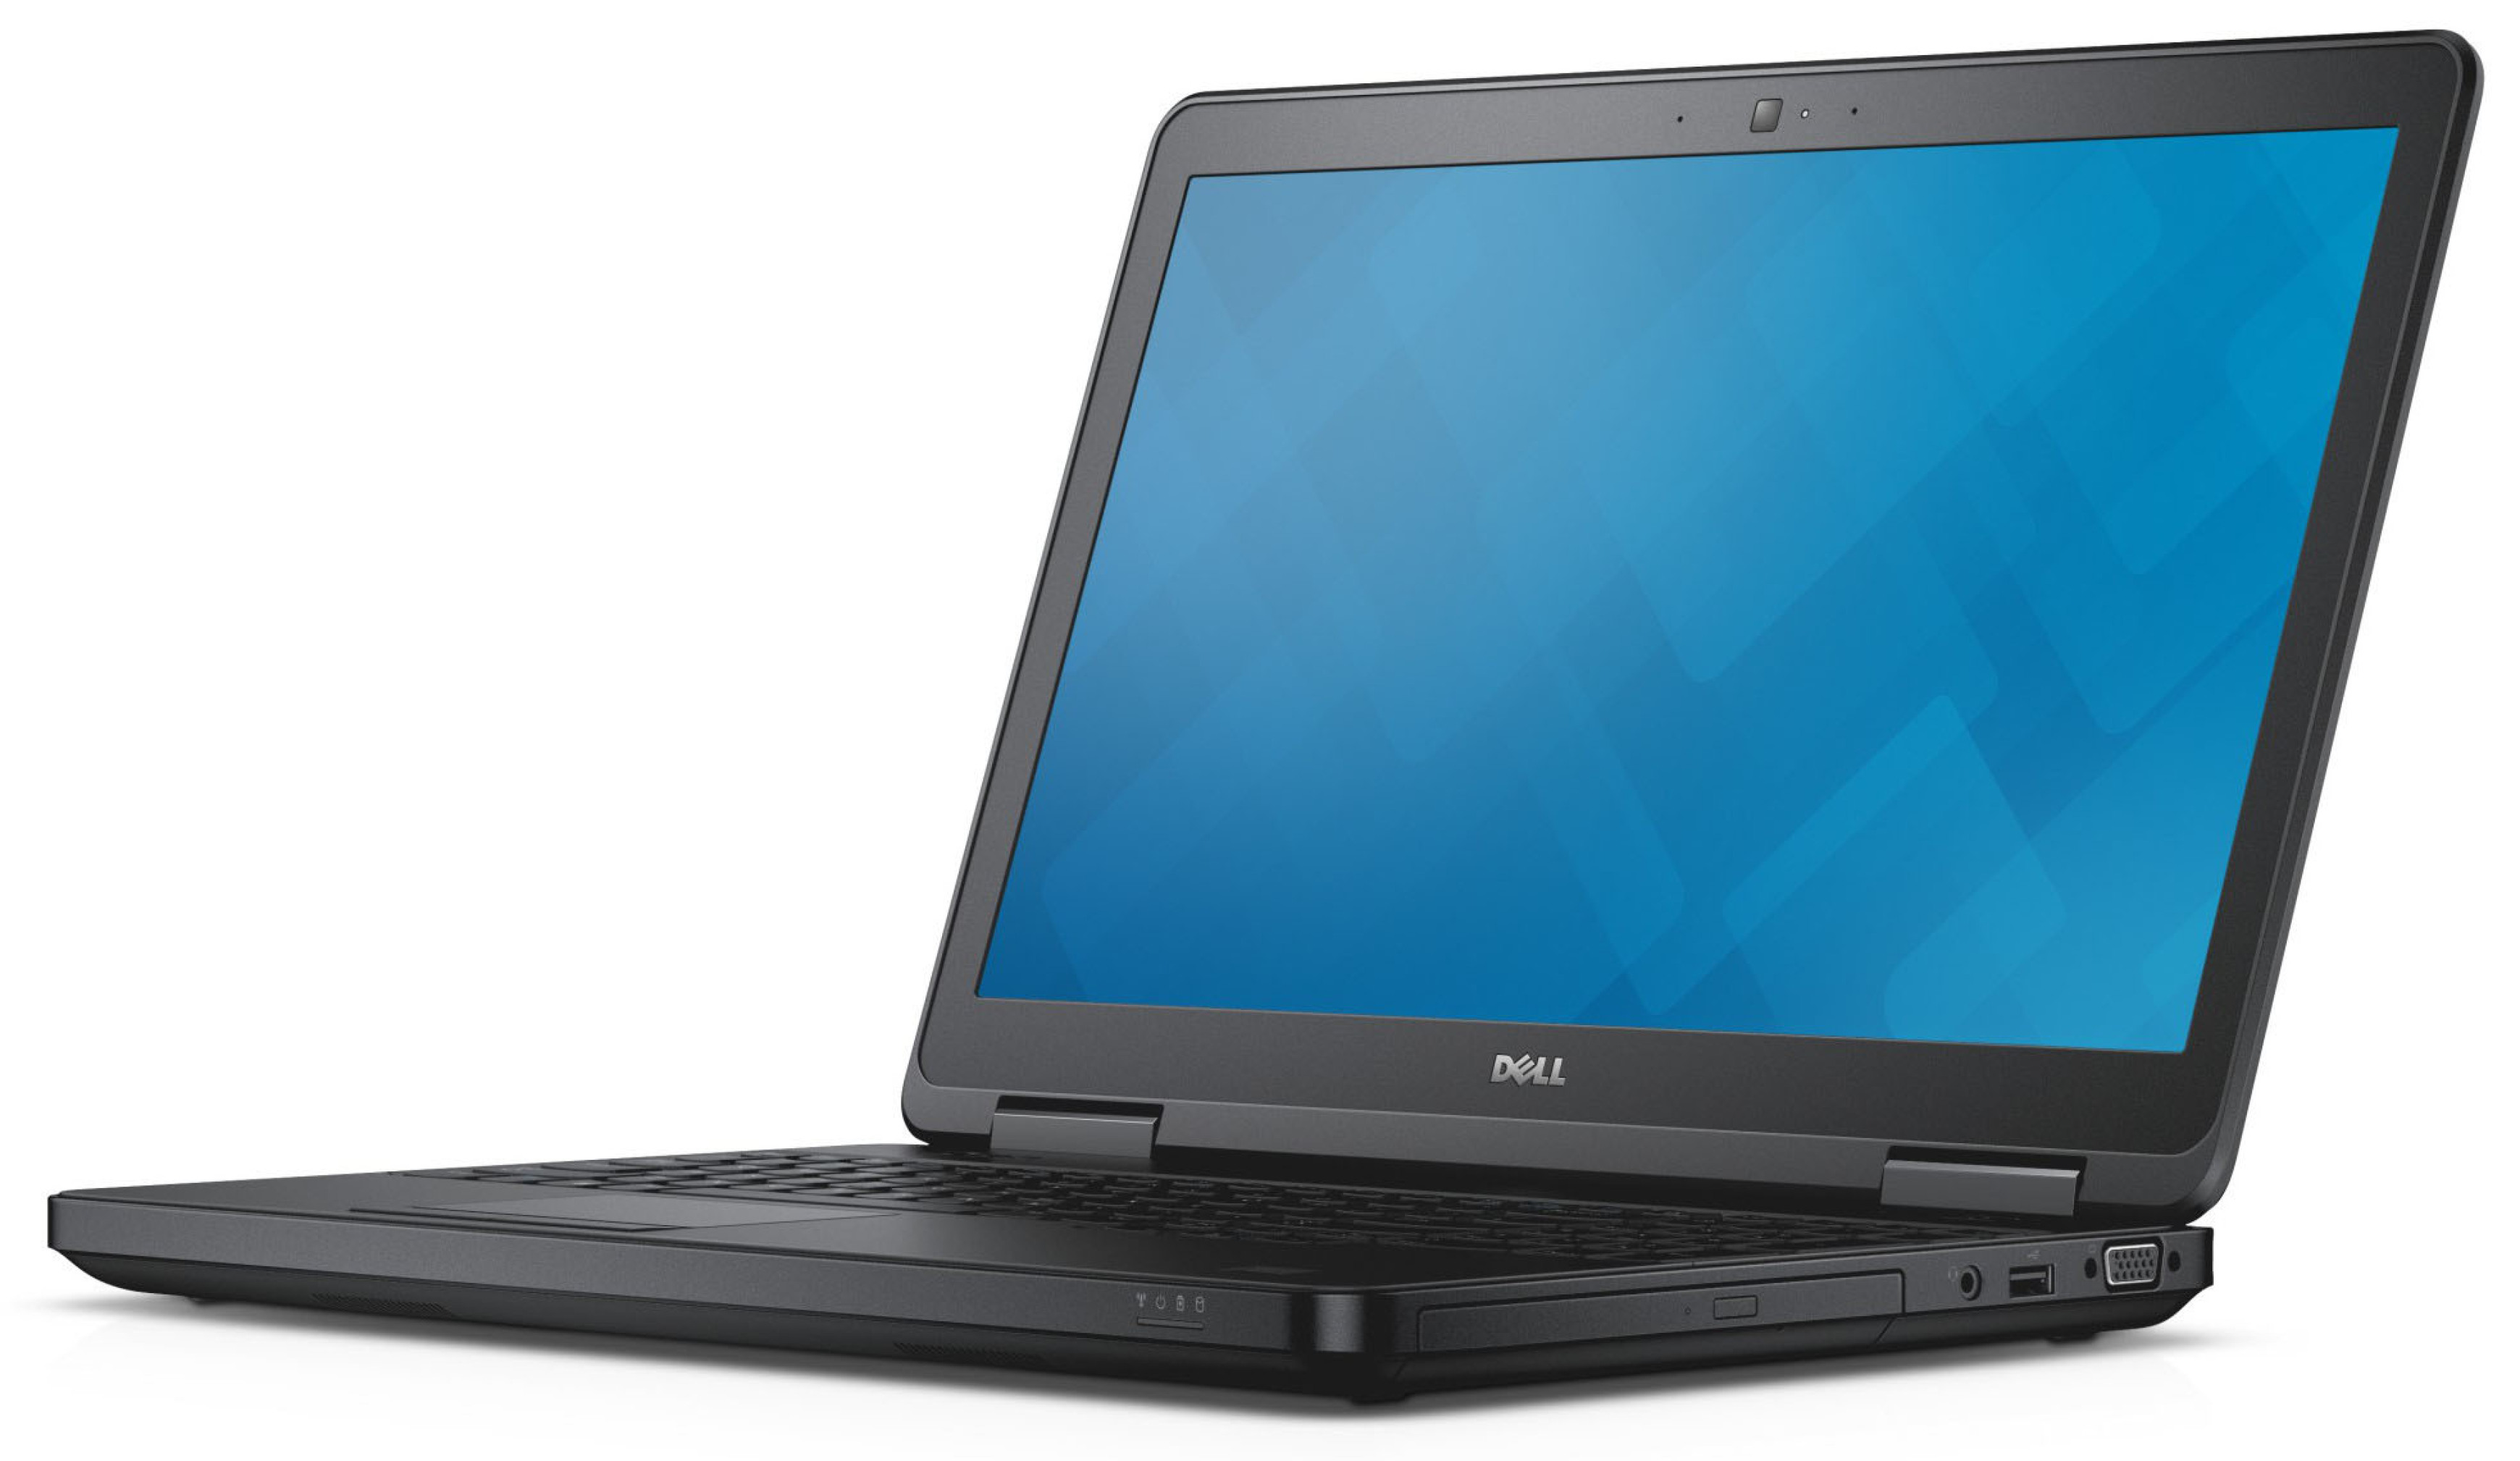  خرید مشخصات و قیمت لپ تاپ استوک اروپایی دل Dell Latitude E5540 با صفحه نمایش 15.6 اینچی فول اچ دی و هارد 500 گیگ و گرافی 